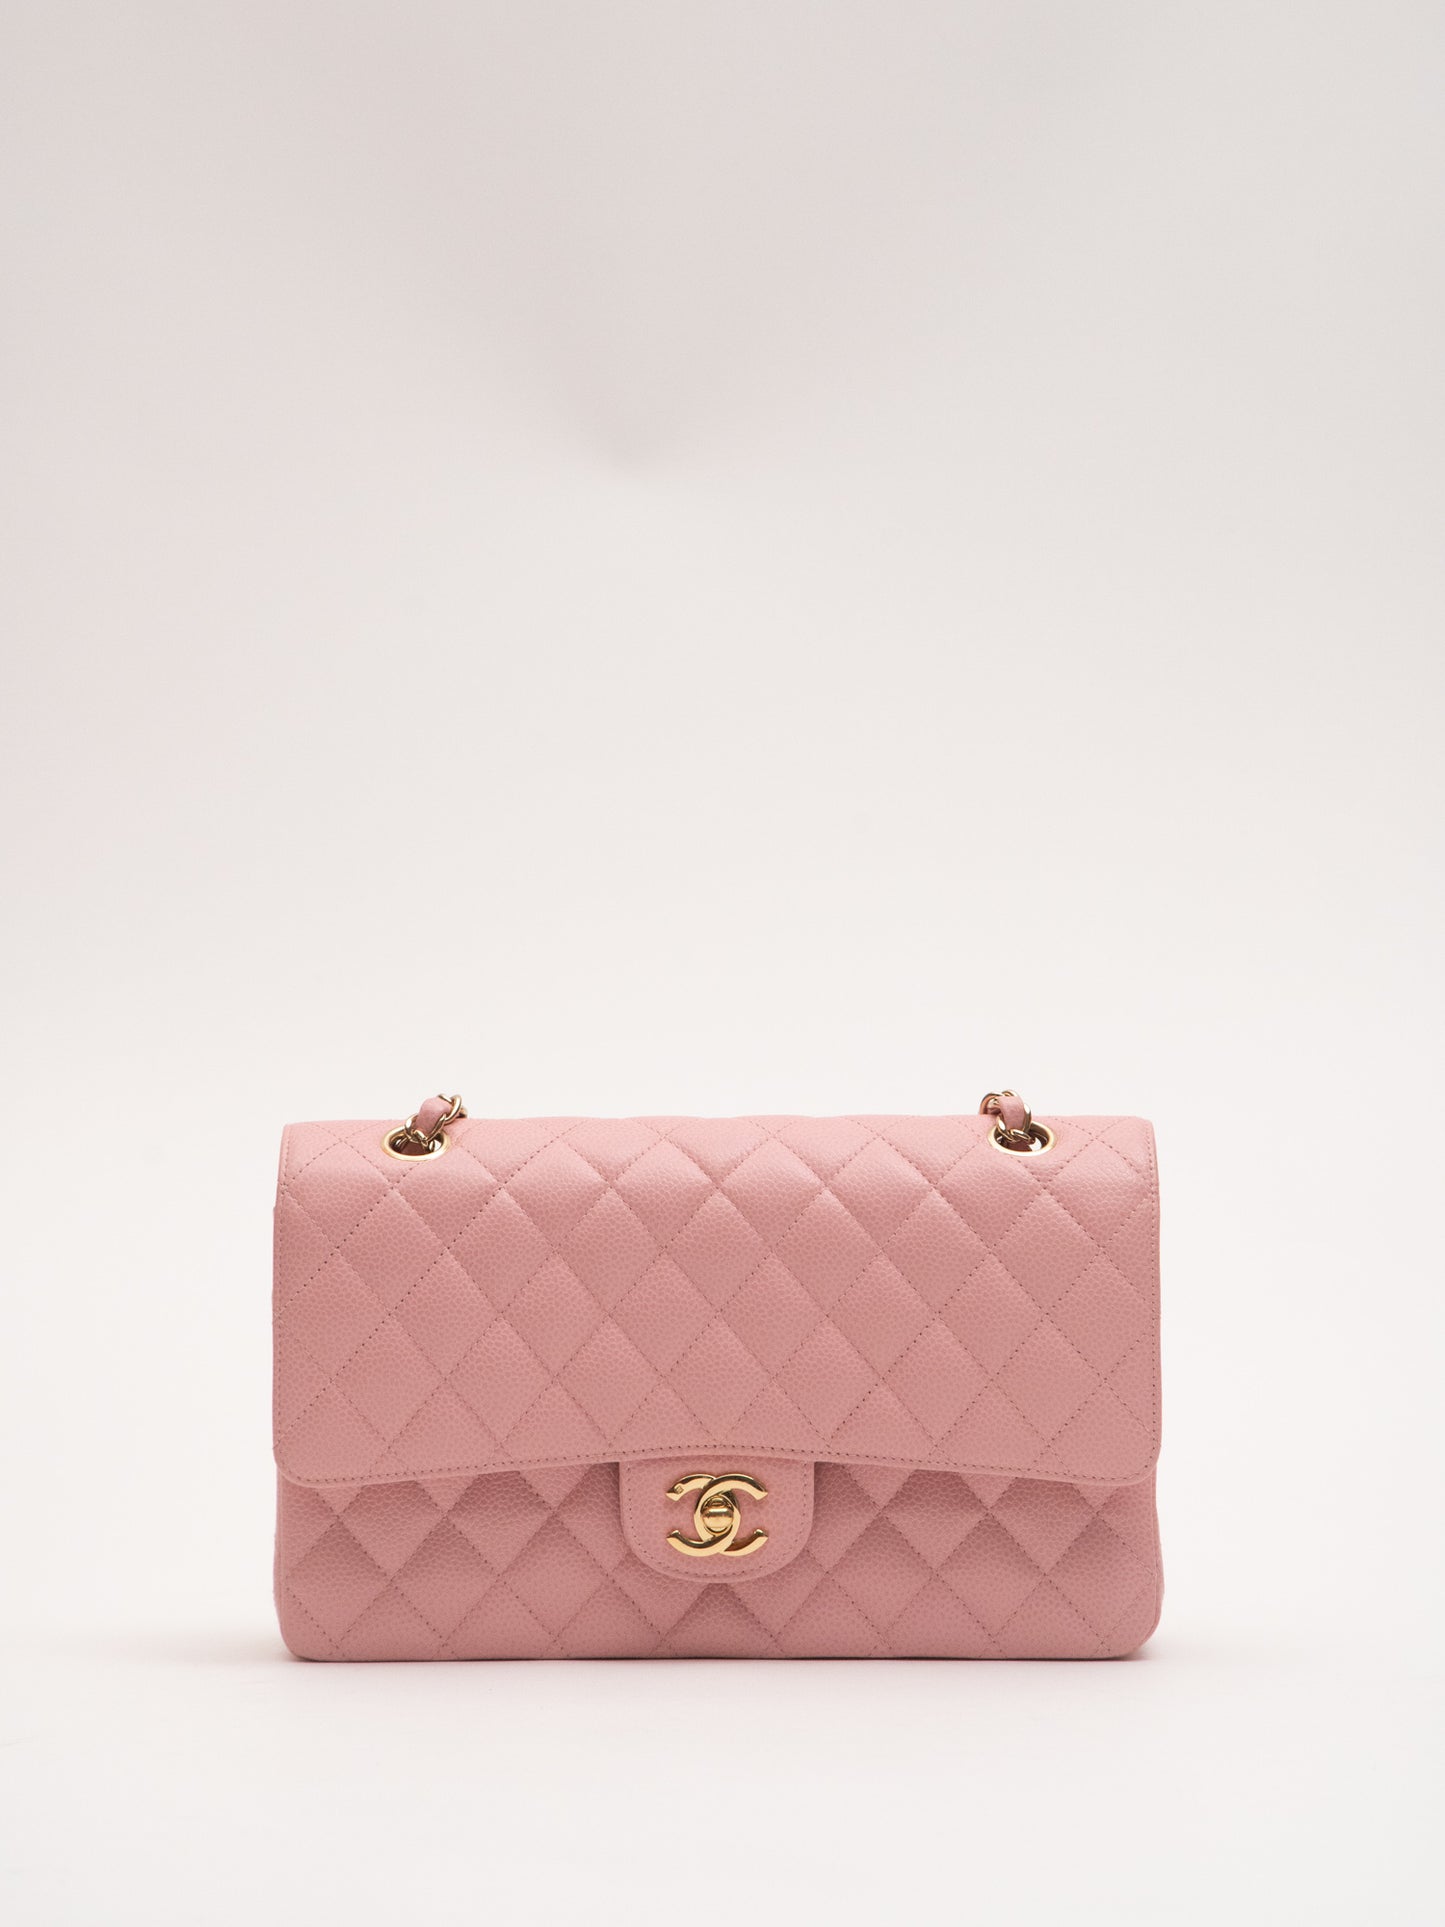 Chanel Classic Flap Matelasse Chain Shoulder Bag Caviar Skin Pink Sakura Pink